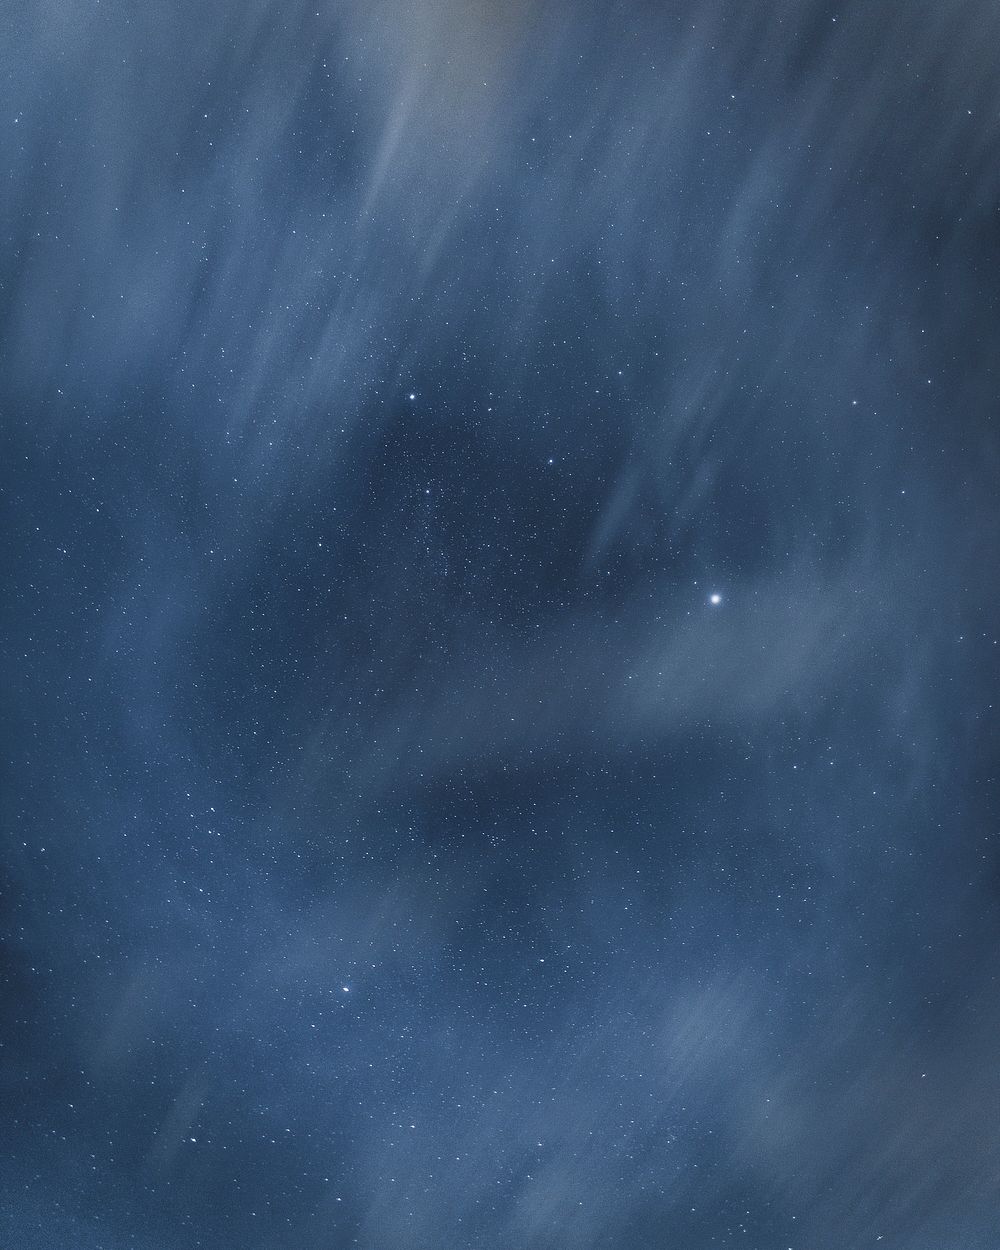 Misty starry night sky background